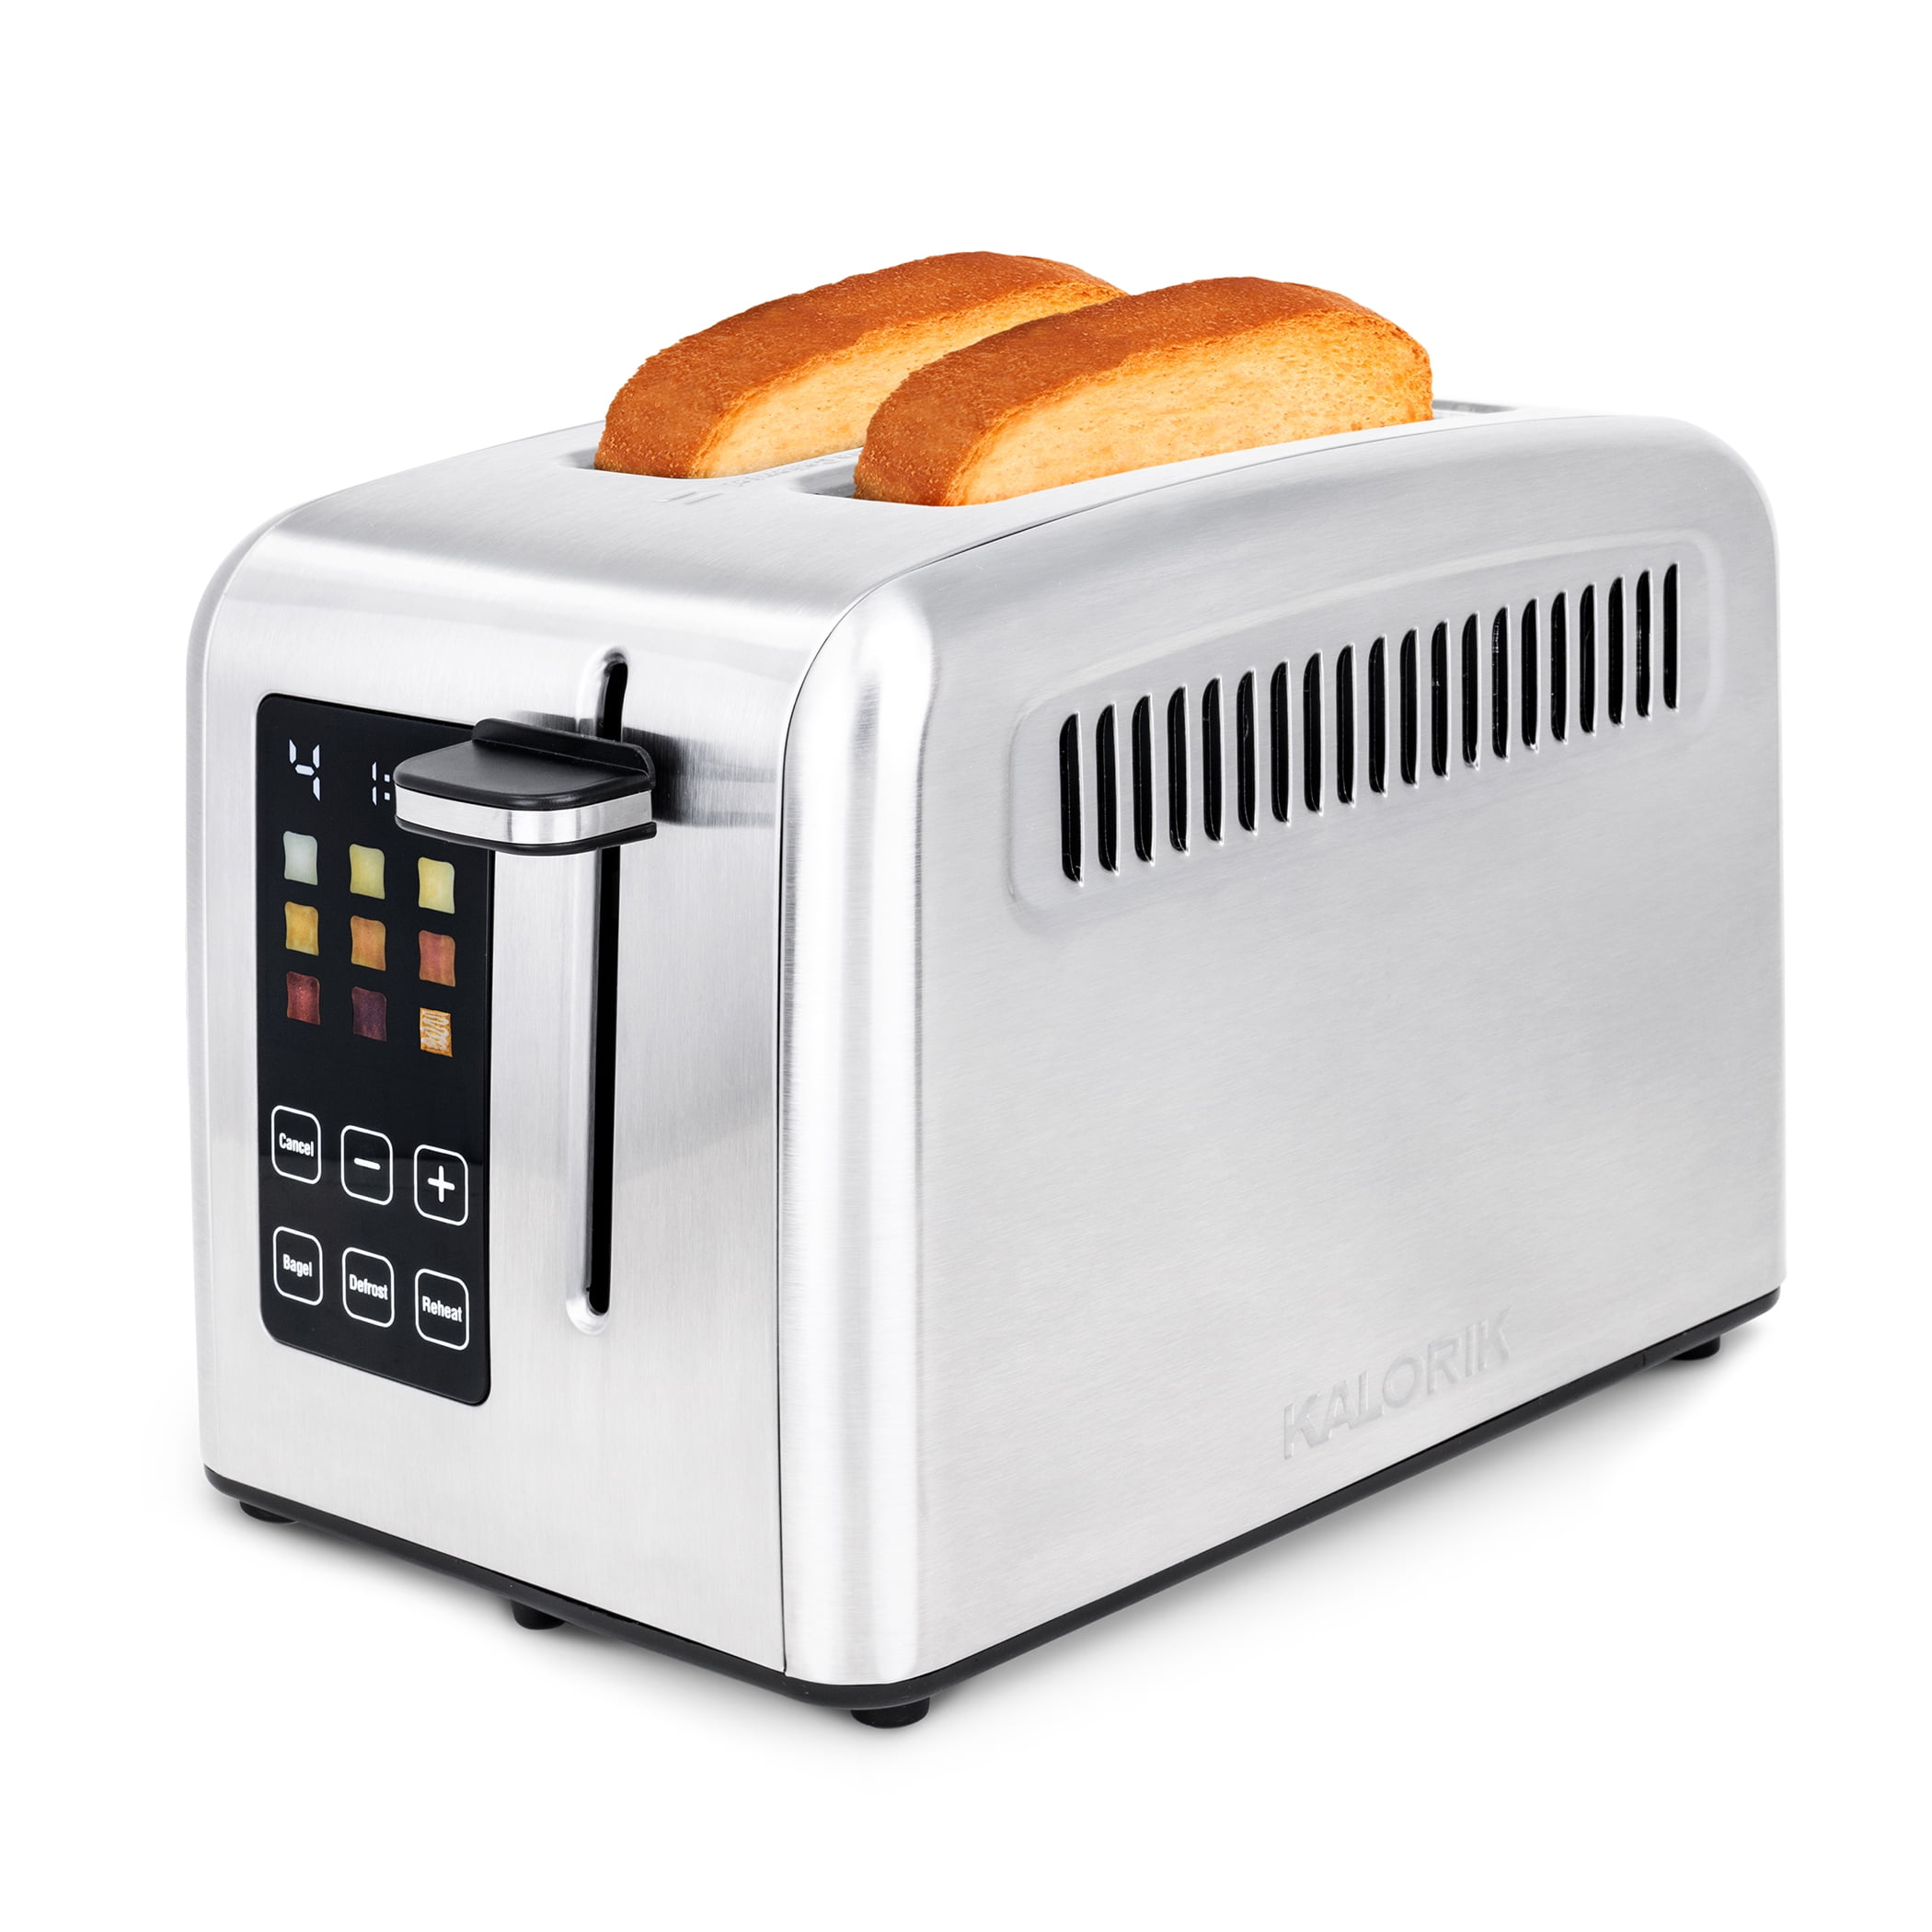 Kalorik® 4-Slice Toaster, Stainless Steel